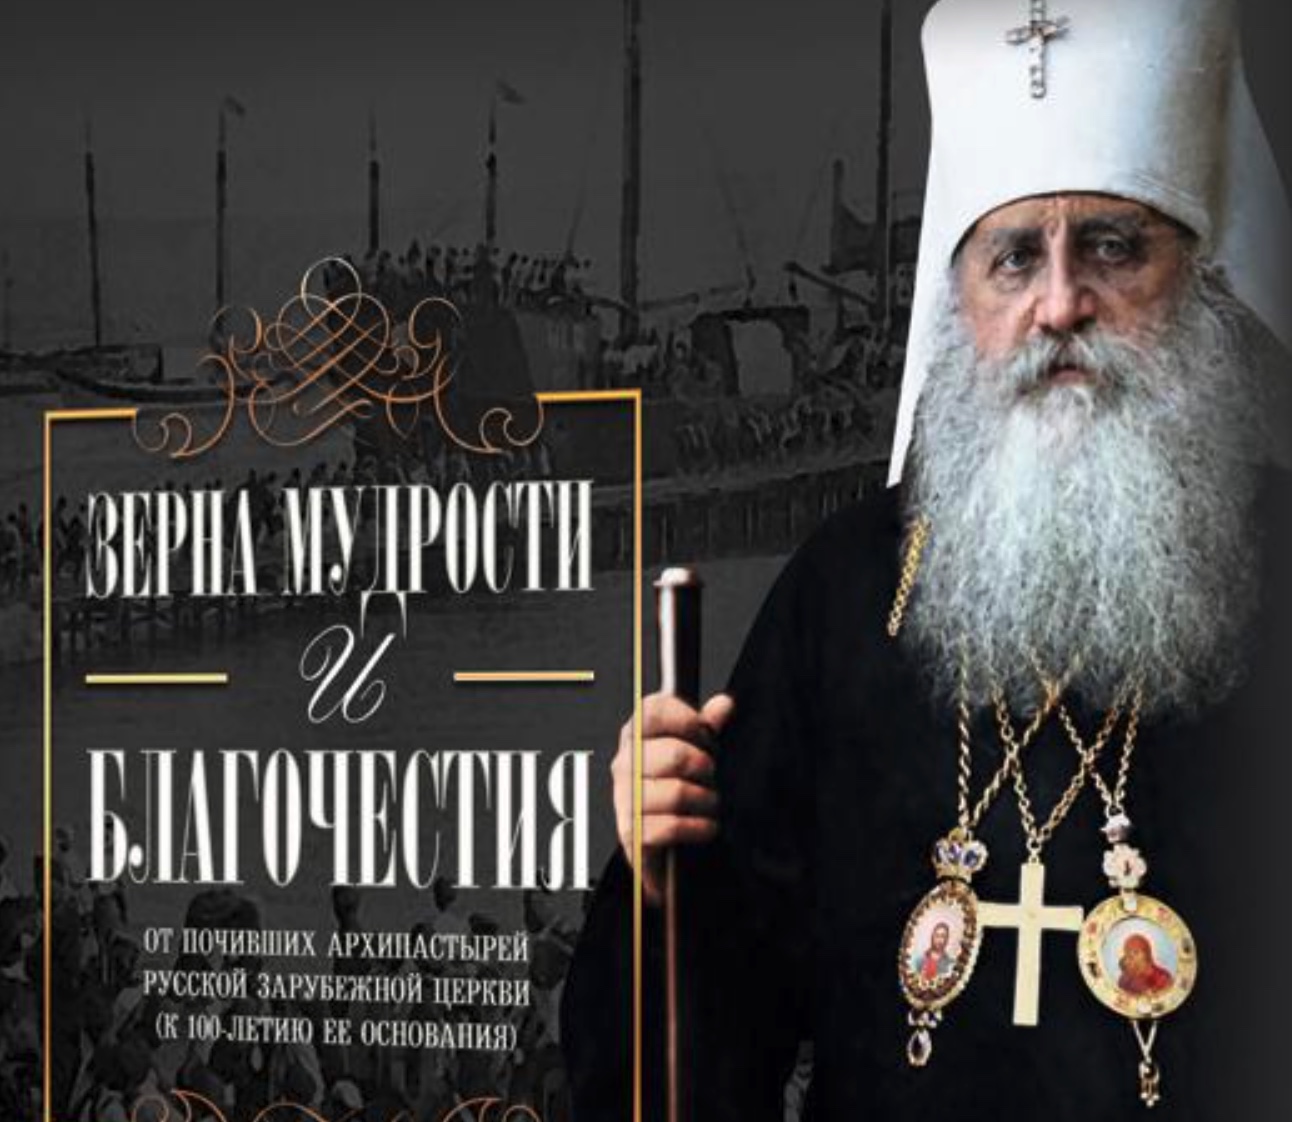 « Des grains de sagesse et de piété », une réflexion sur le centenaire de l’Église russe hors-frontières